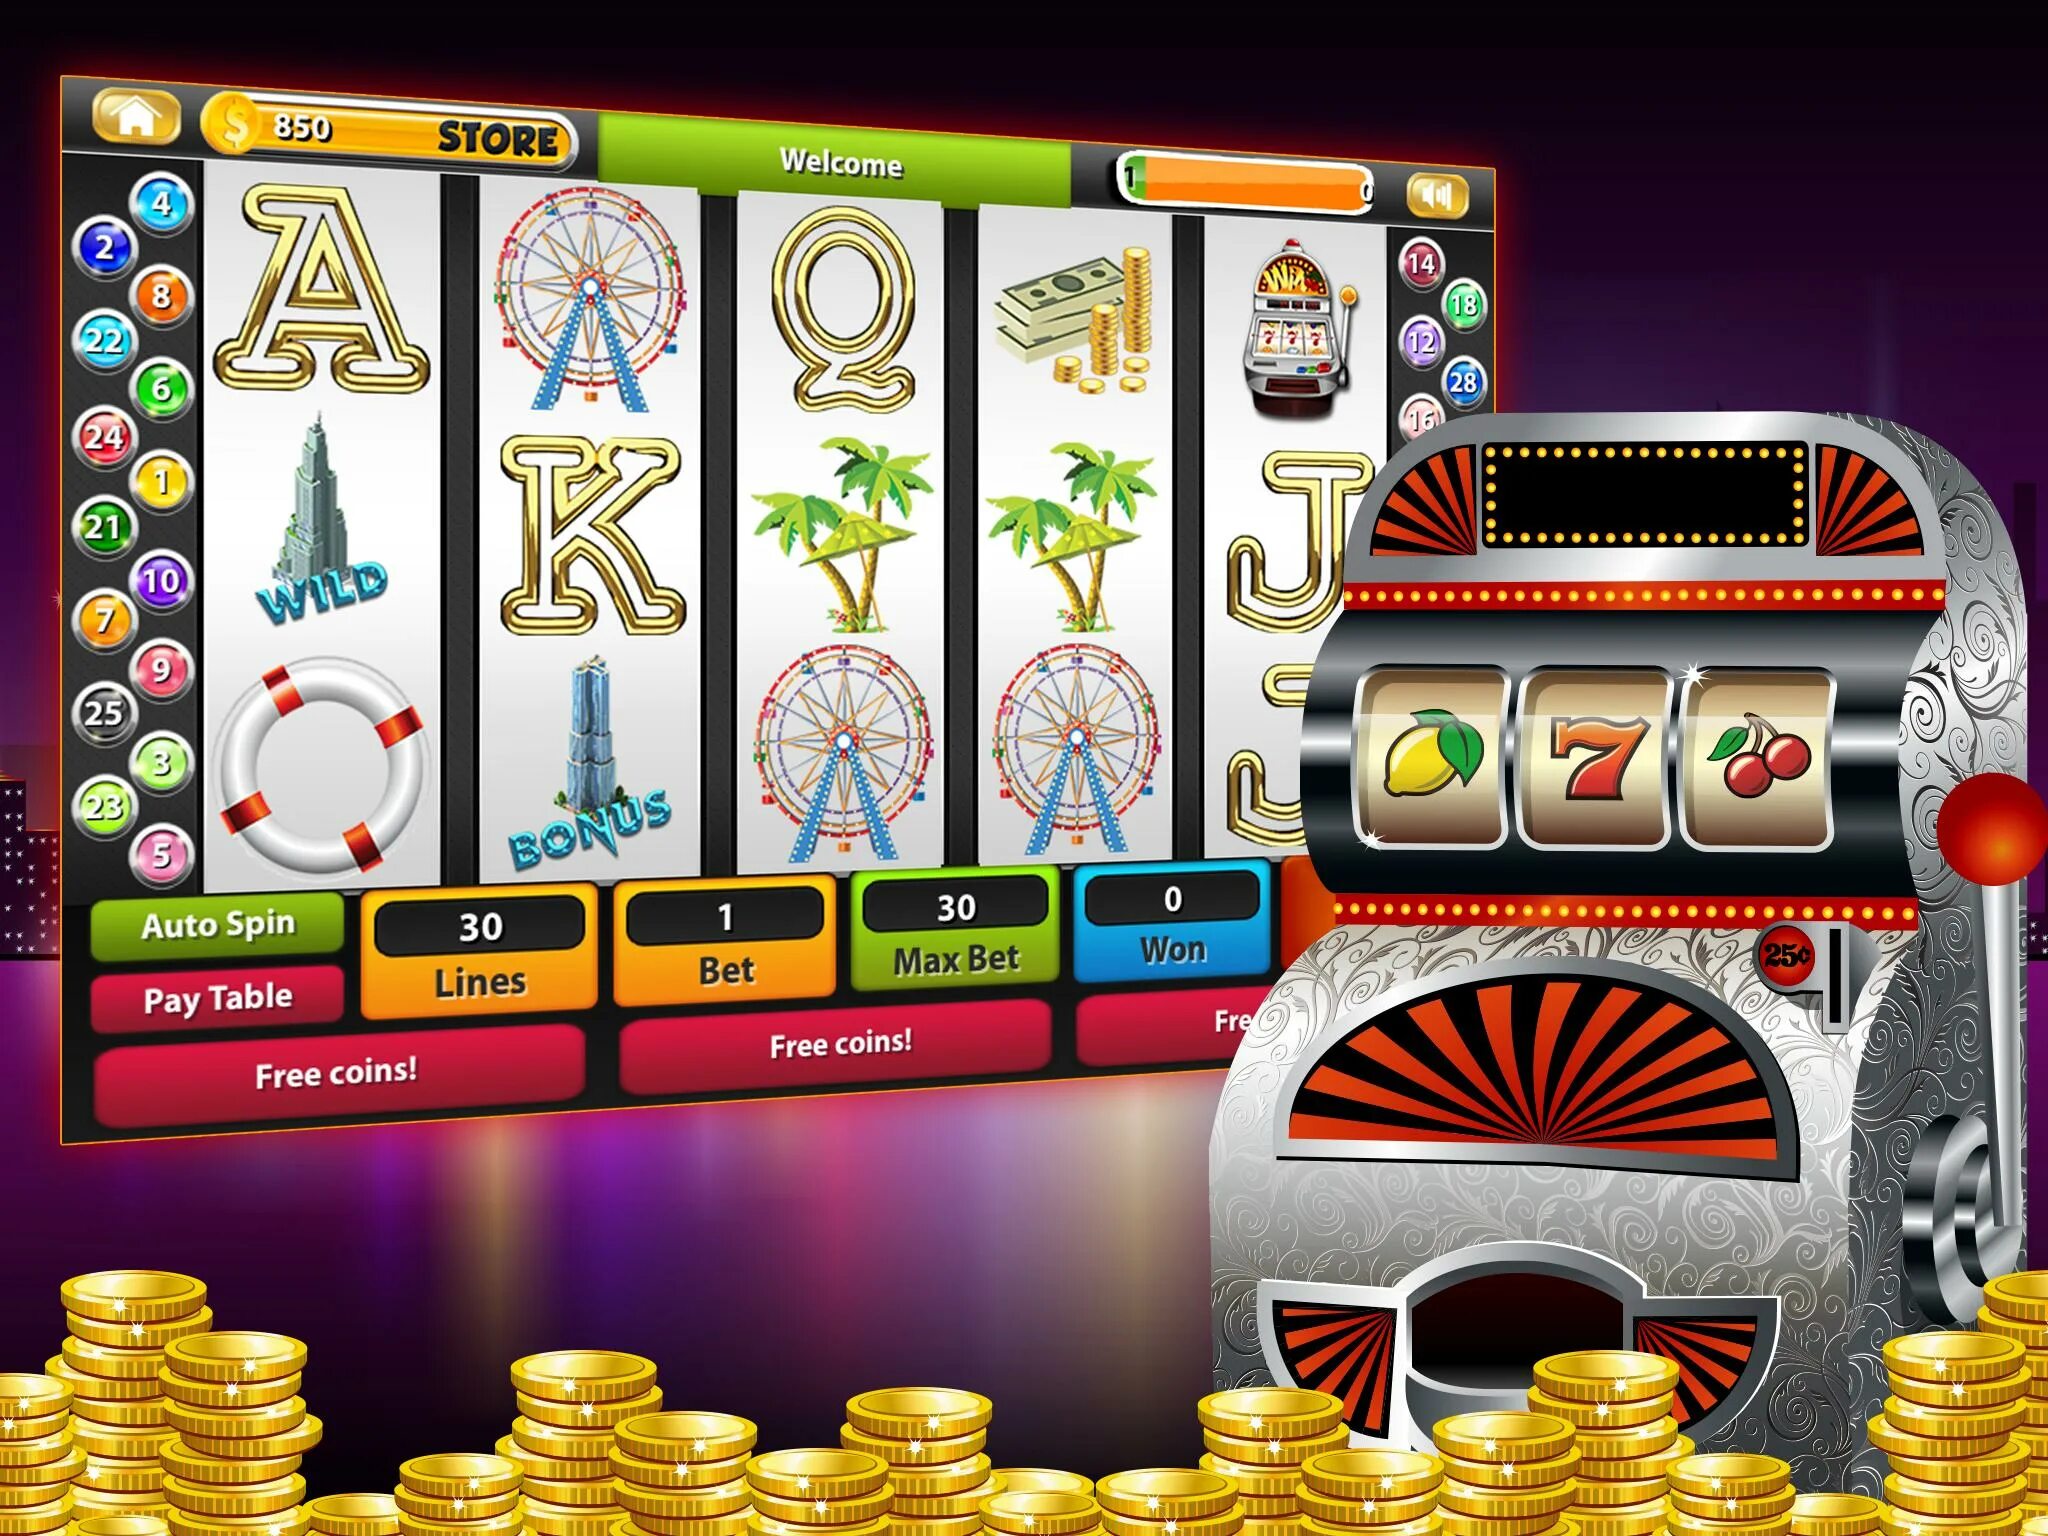 Игровой аппарат Джек пот. Игровой автомат казино. Игровые автоматы на реальные деньги. Игральные автоматы с деньгами. Слот машина game slot machines org ru